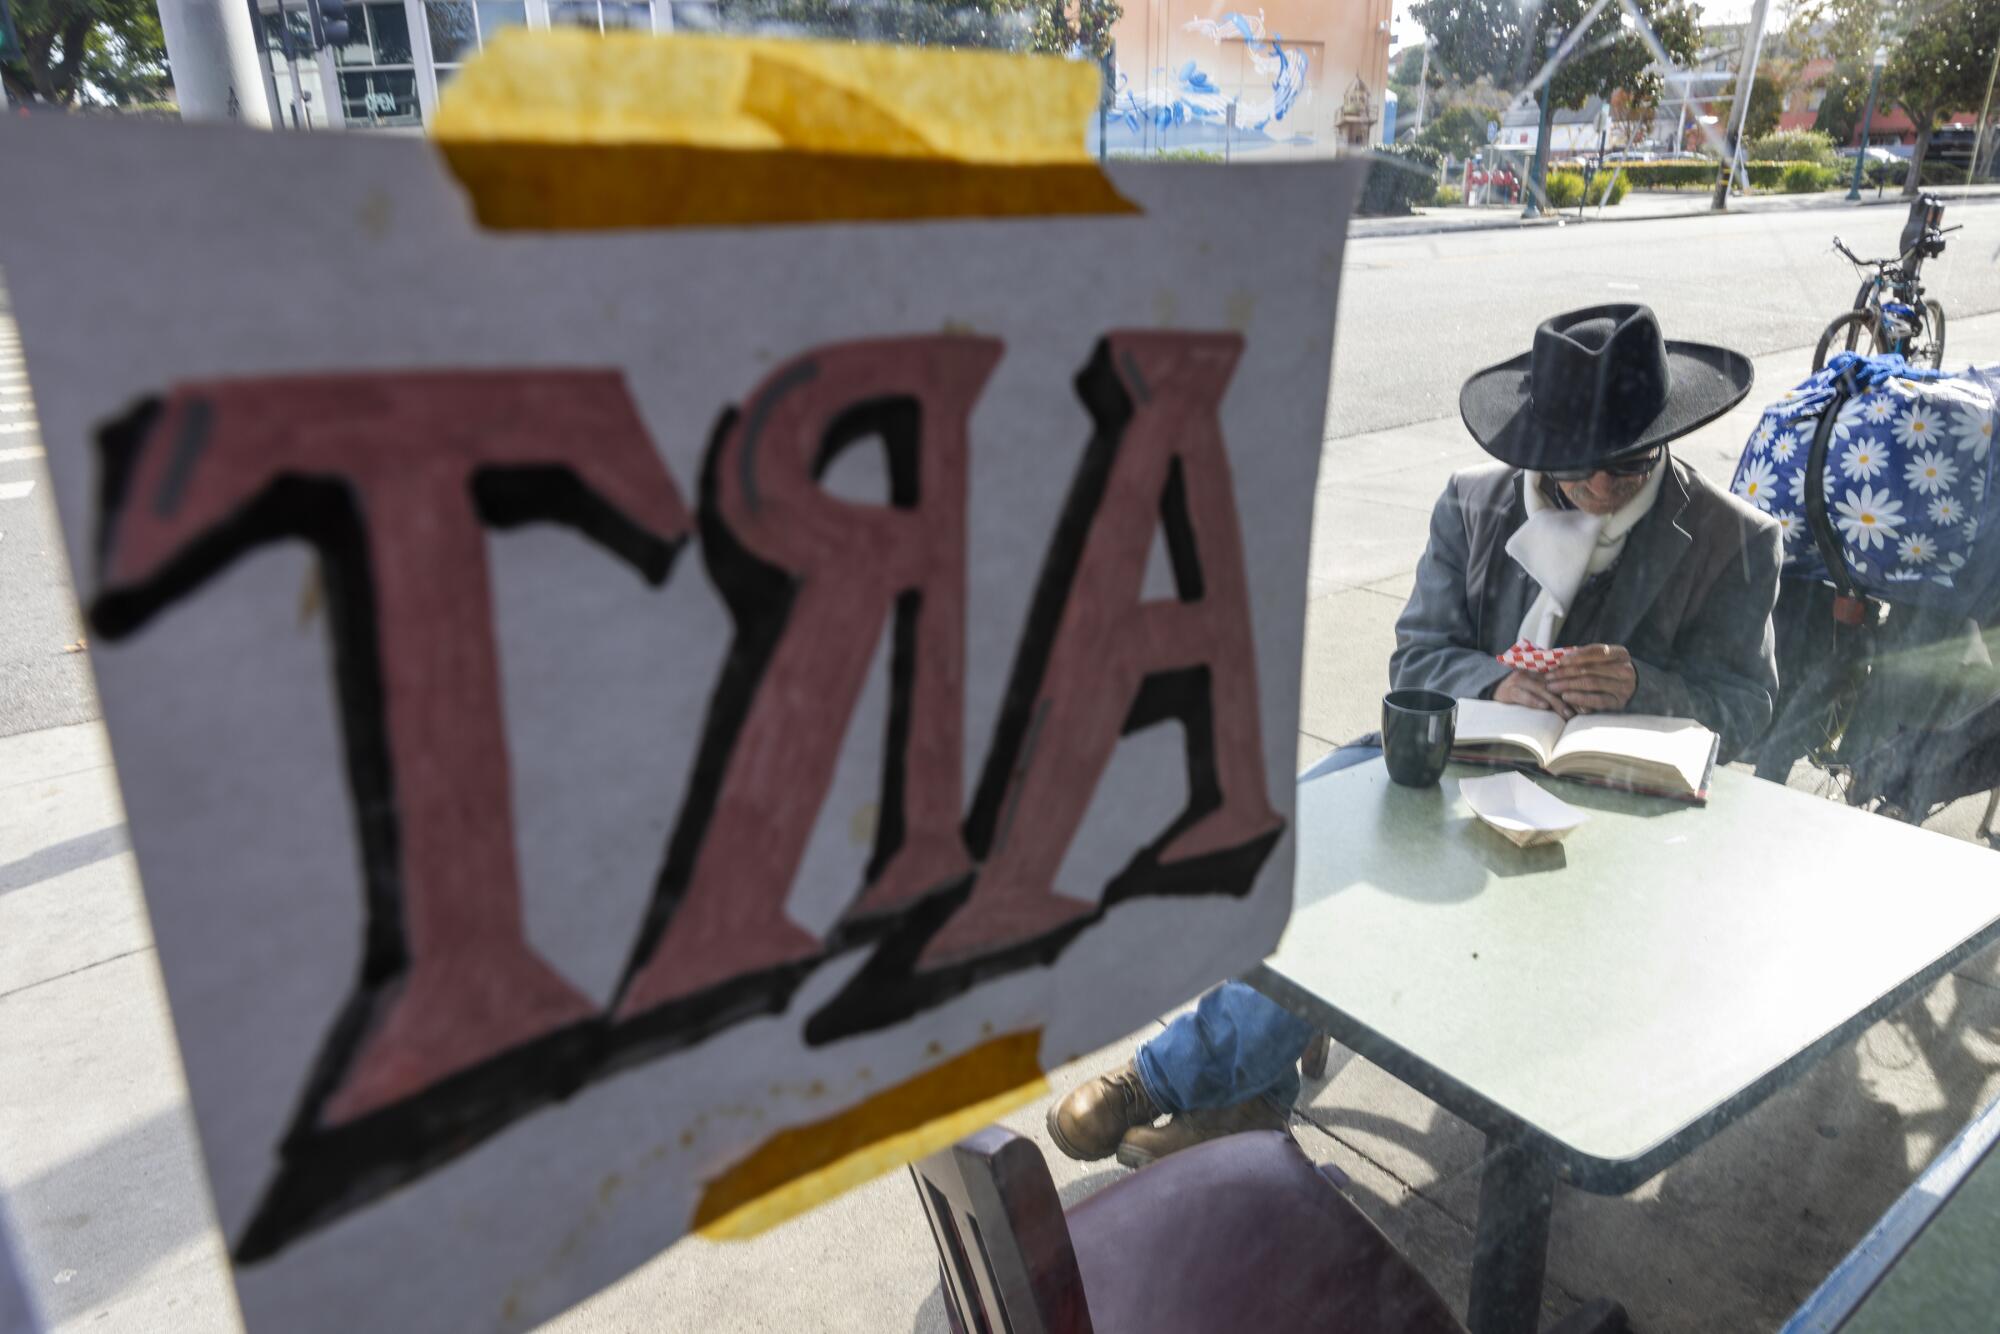 Santa Cruz's plans for high-rise living meet opposition